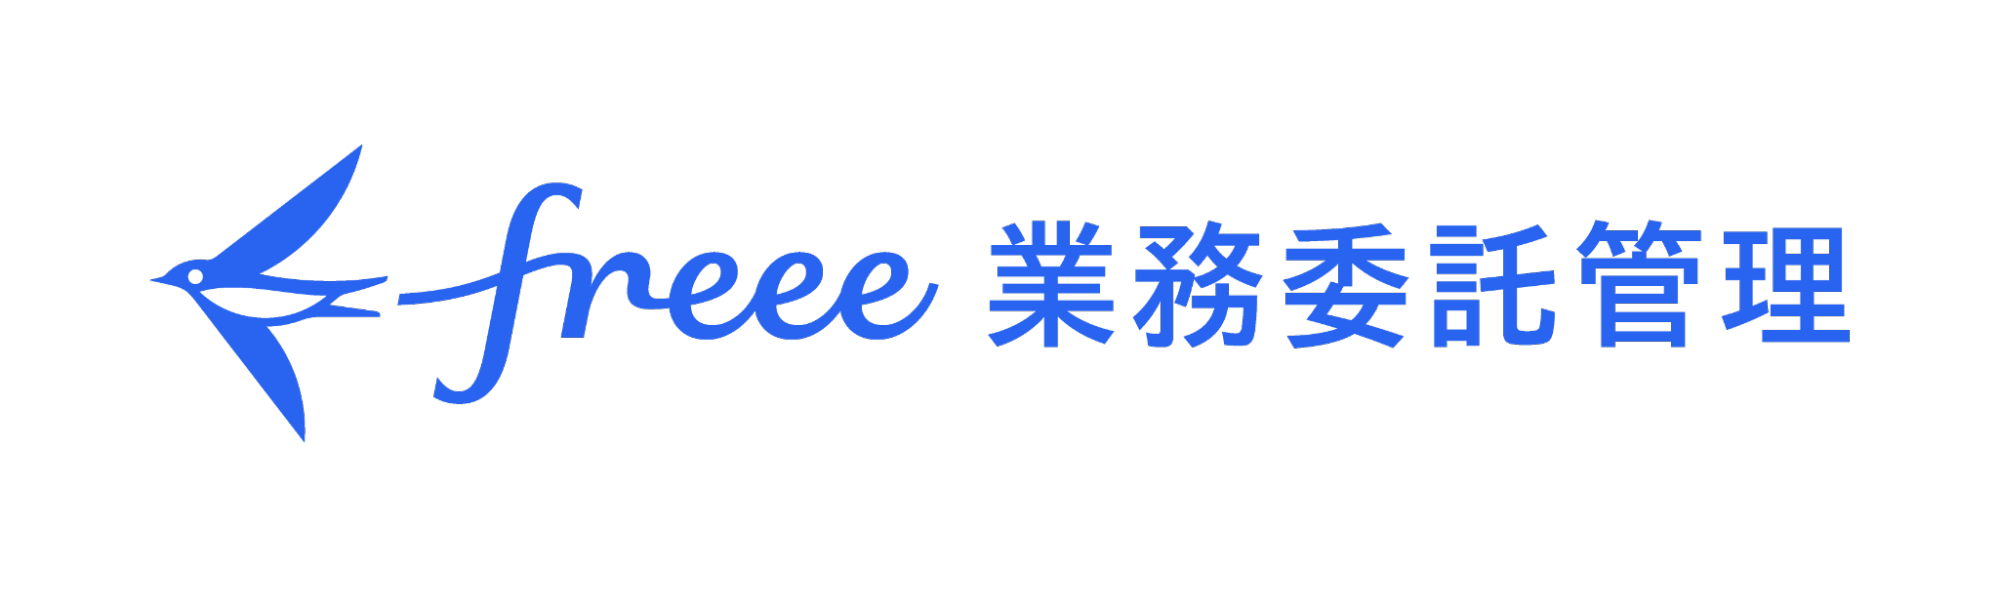 freee業務委託管理ロゴ画像